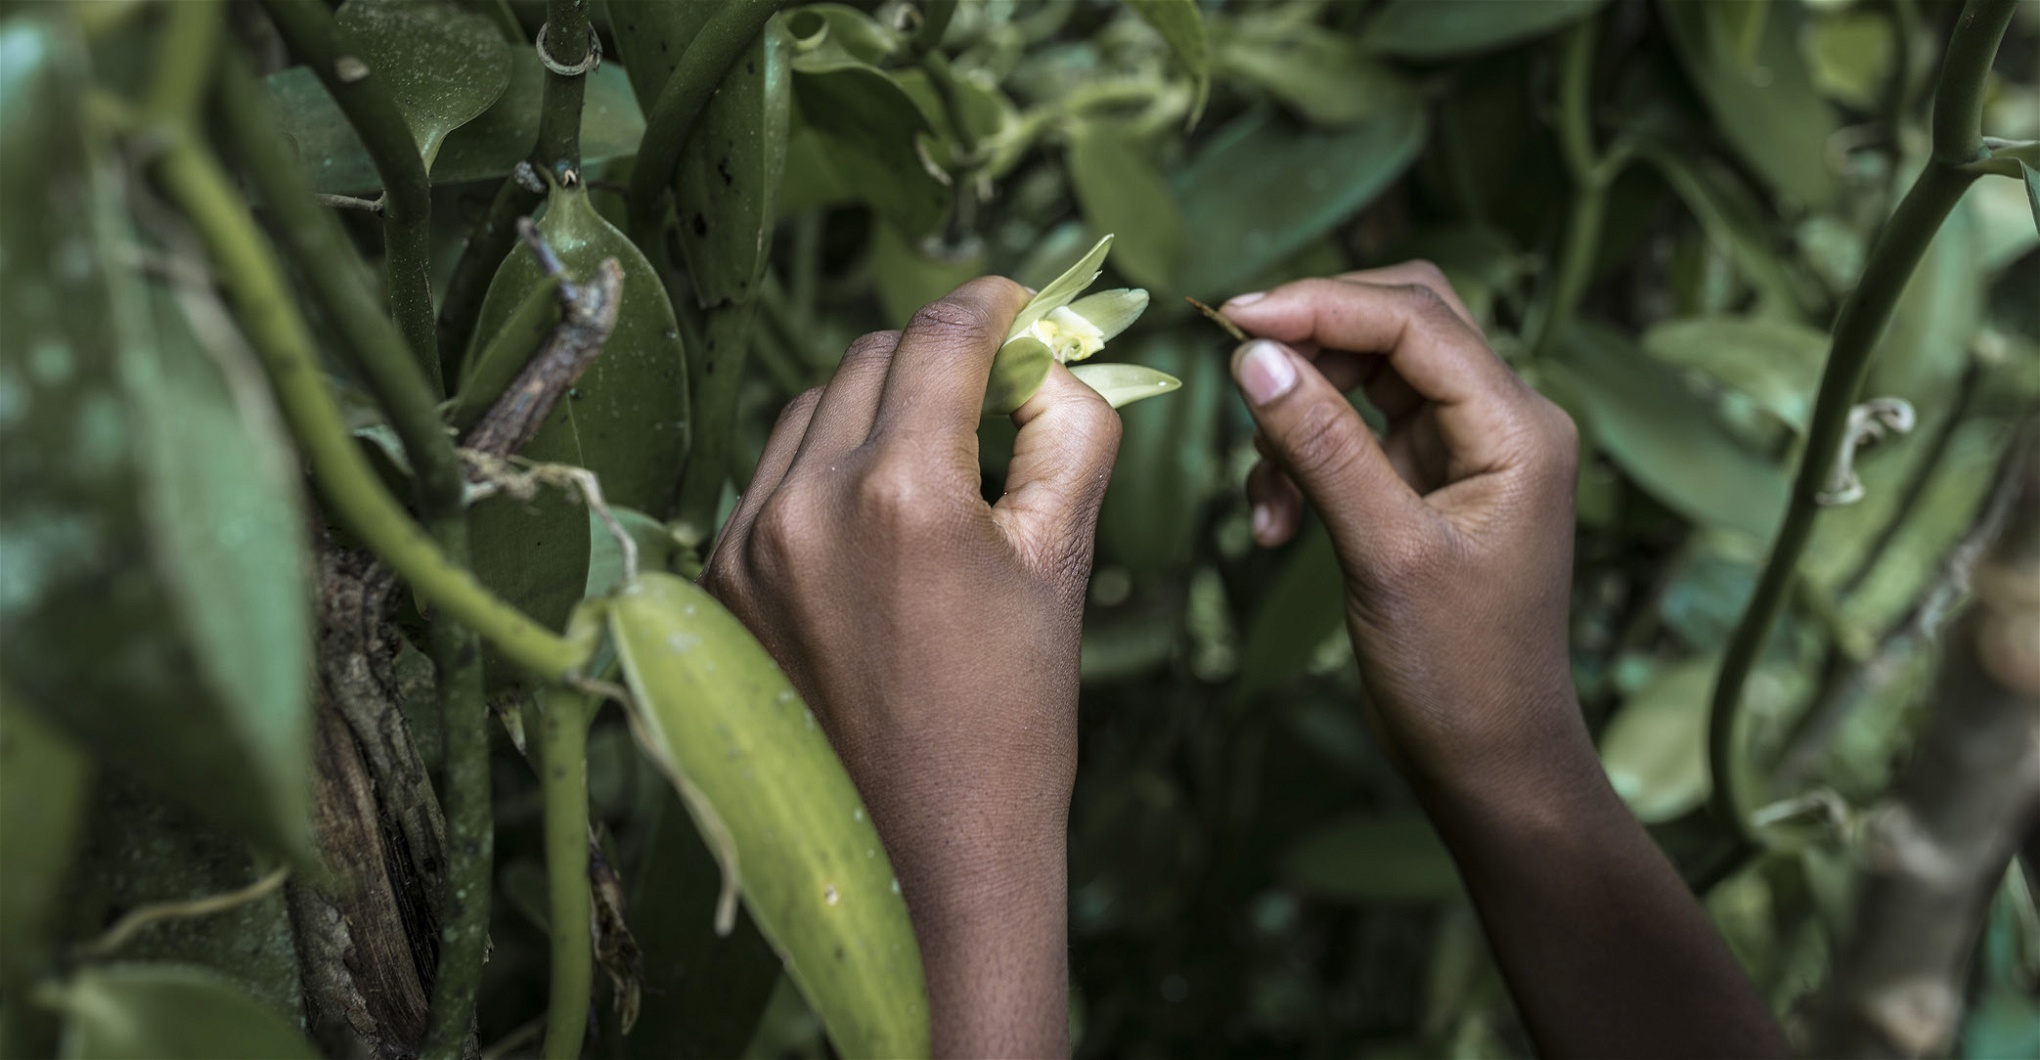 Allt arbete på vaniljodlingarna sker för hand. Enligt en rapport från internationella arbetsorganisationen,
ILO, från 2013 är en tredjedel av arbetarna i vaniljodlingarna barn.